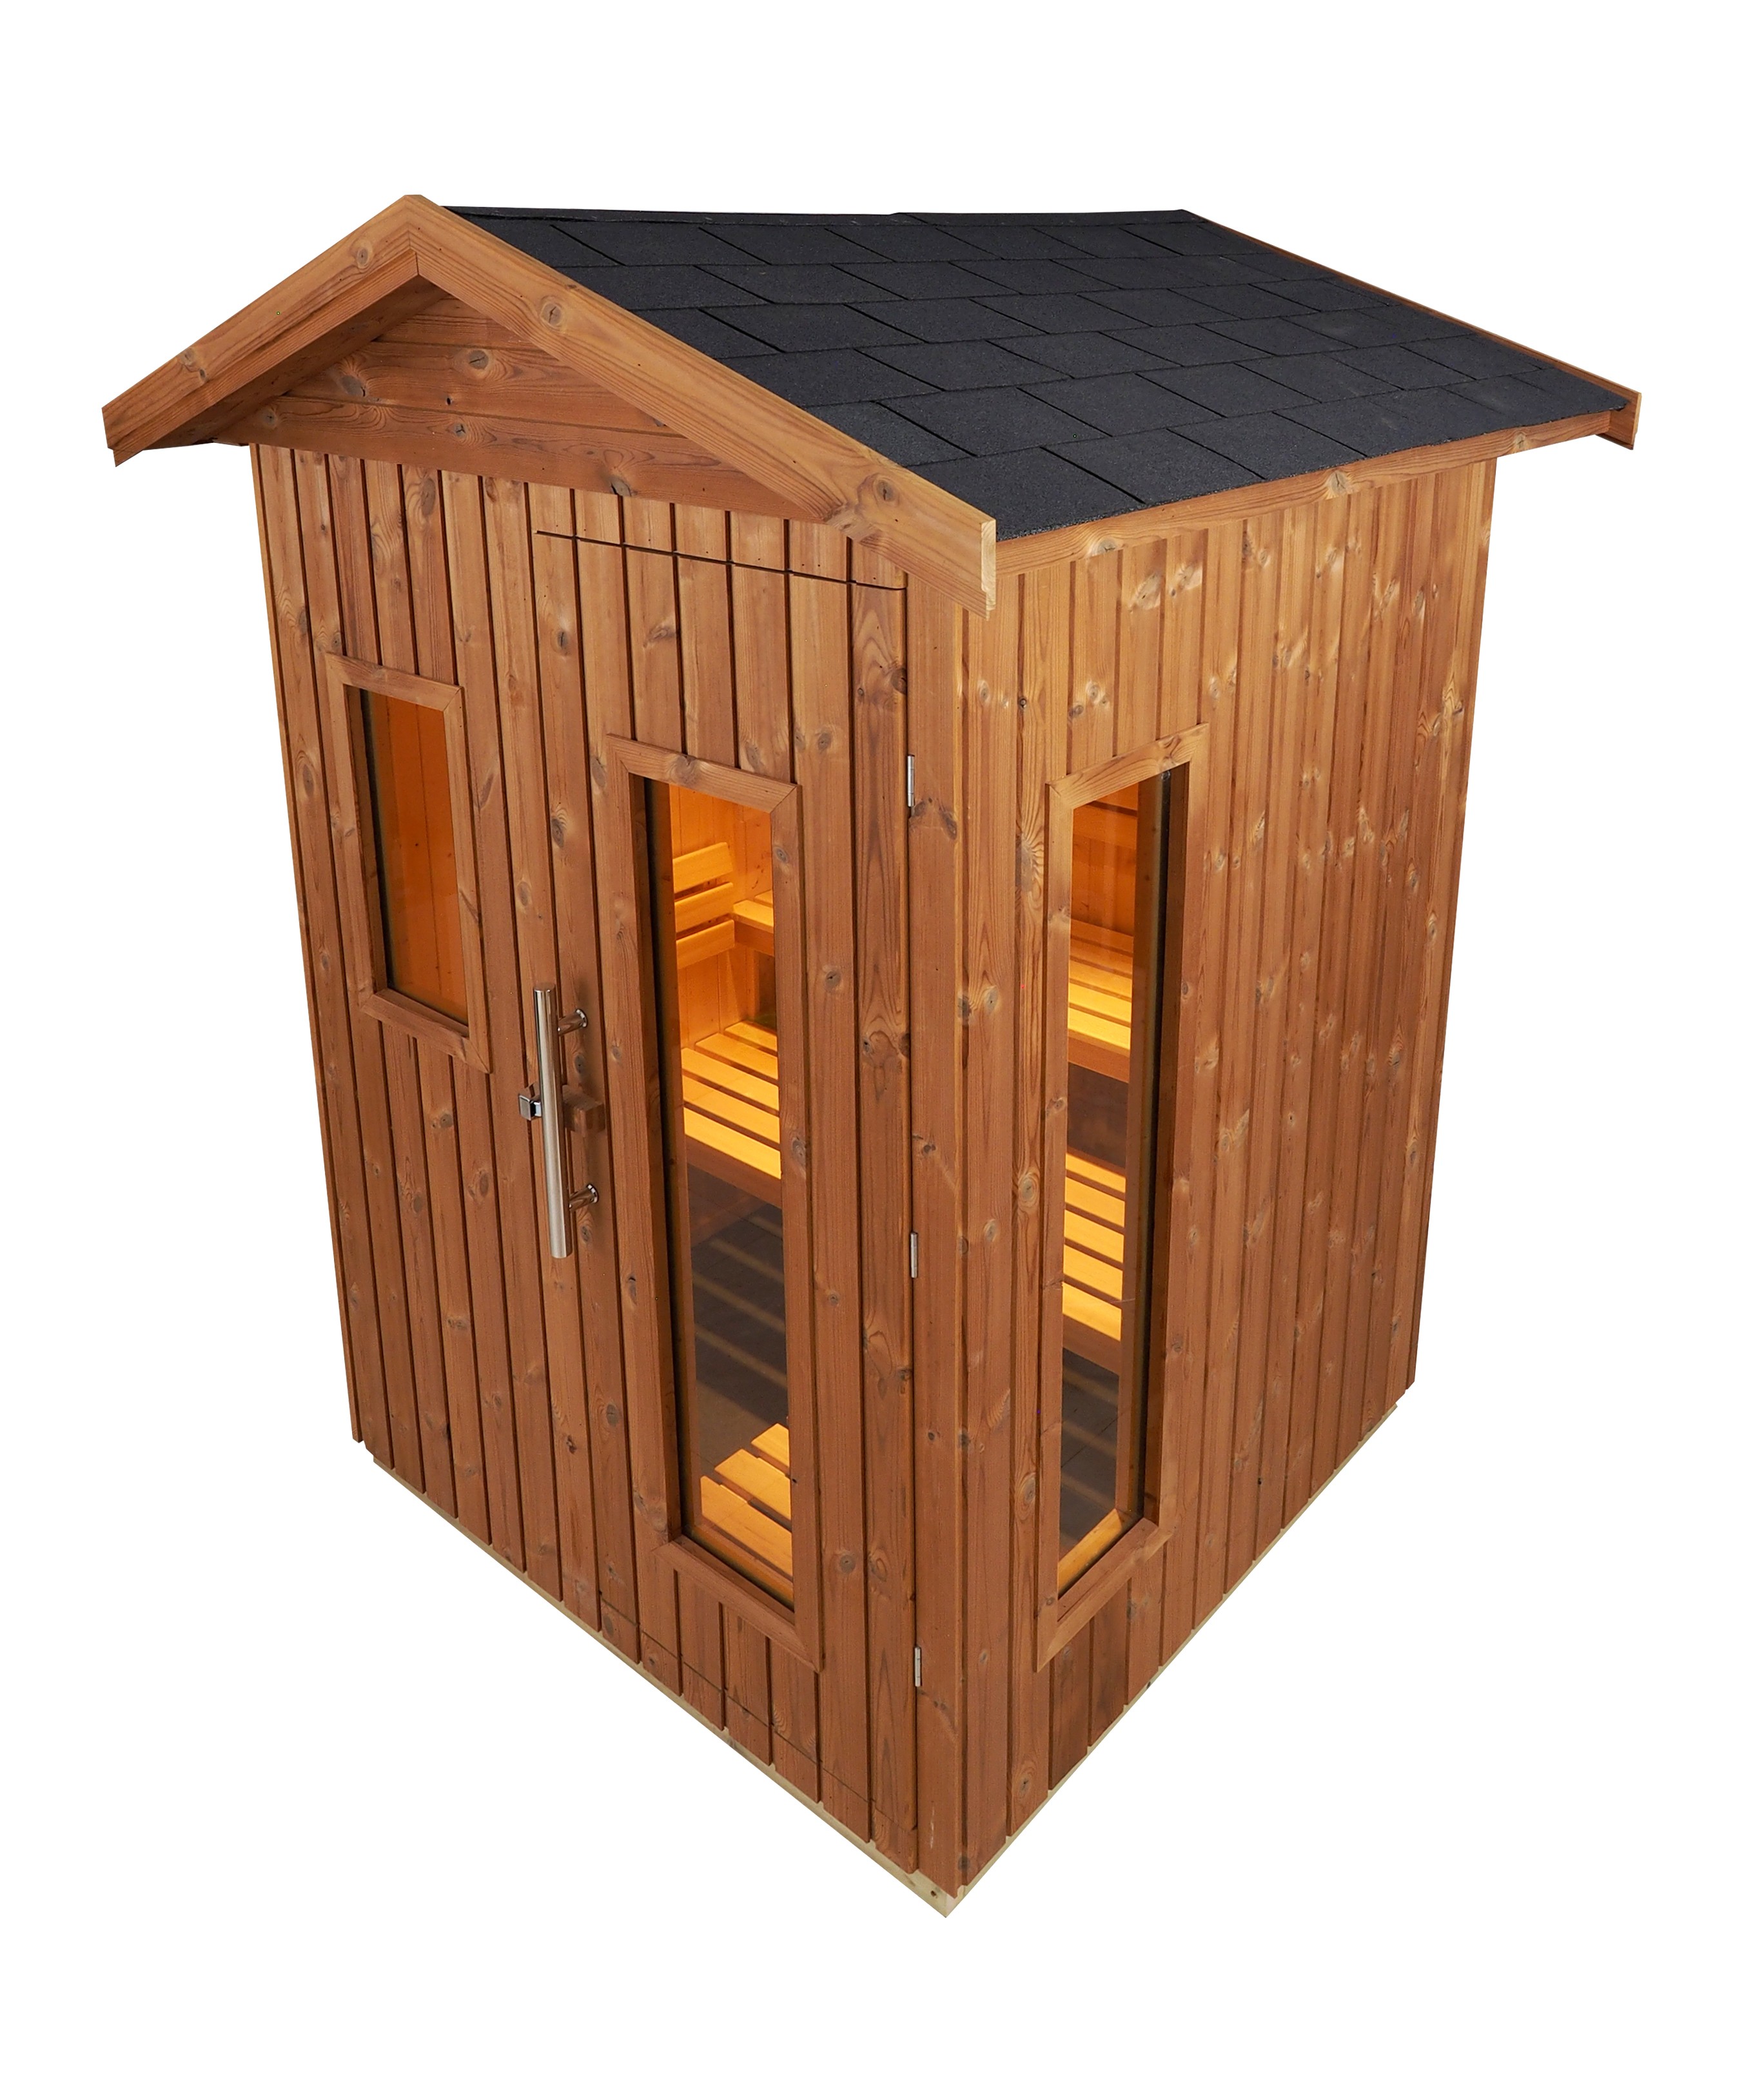 Cabina sauna OceCabine de sauna Oceanic tradicional finlandesa de exterior E2020 para 3 pessoas